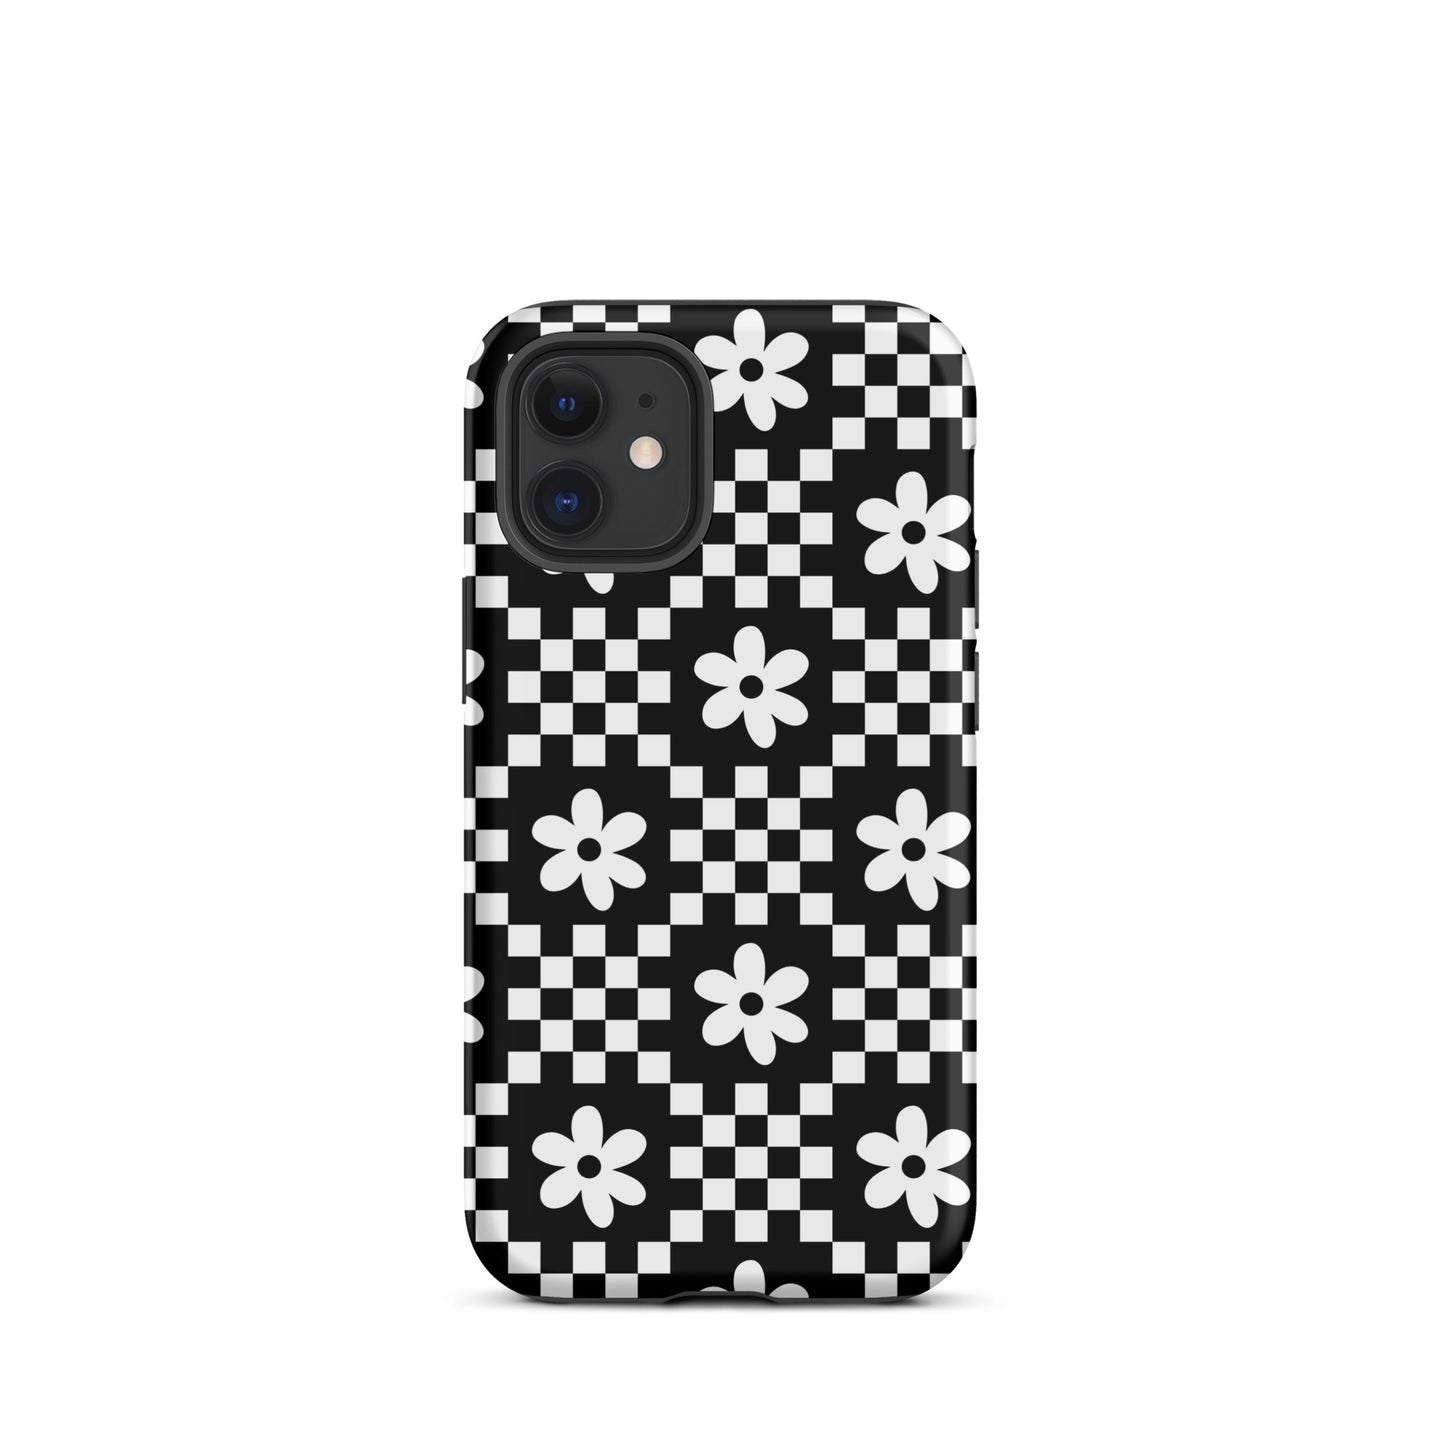 Checkerboard Daisy iPhone Case iPhone 12 mini Matte